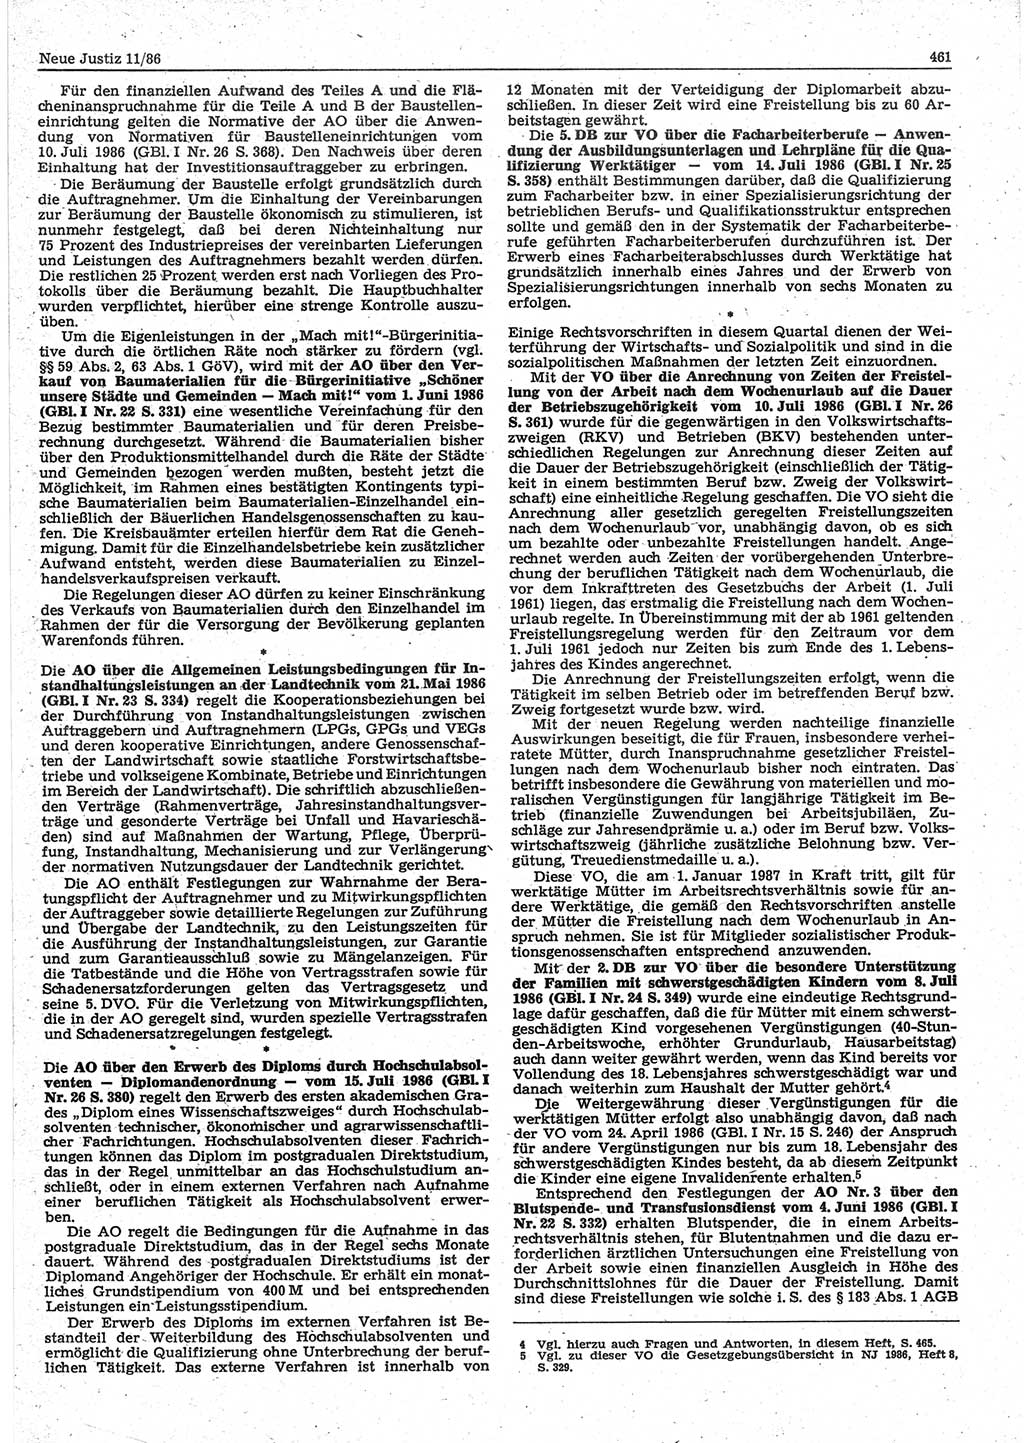 Neue Justiz (NJ), Zeitschrift für sozialistisches Recht und Gesetzlichkeit [Deutsche Demokratische Republik (DDR)], 40. Jahrgang 1986, Seite 461 (NJ DDR 1986, S. 461)